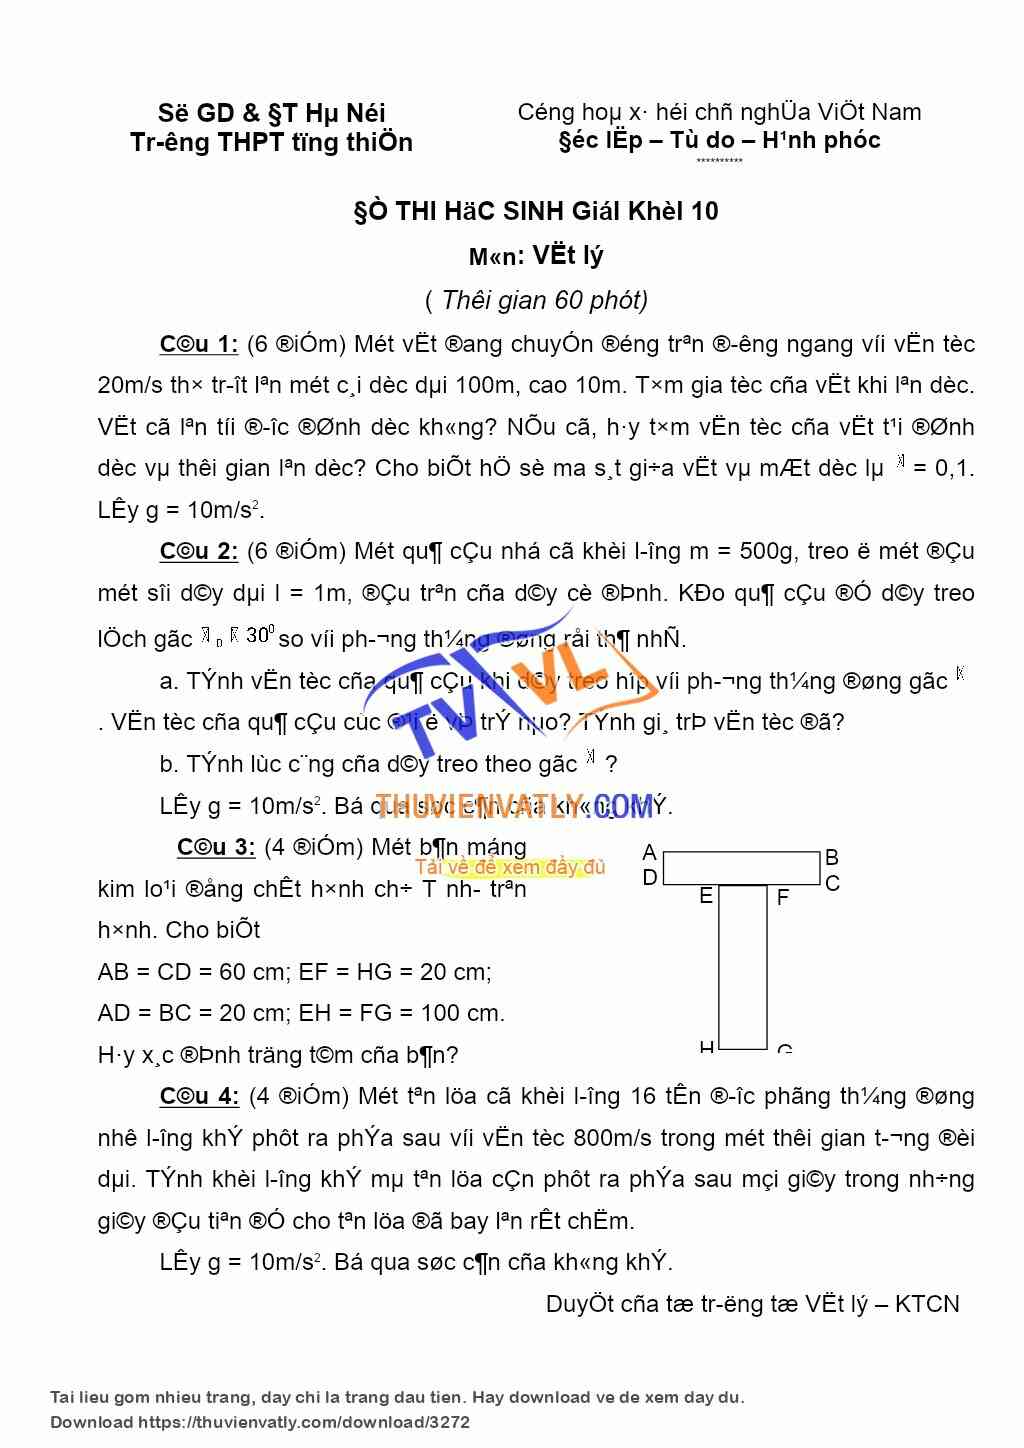 Đề và đáp án HSG lớp 10 - THPT Tùng Thiện, Hà Nội